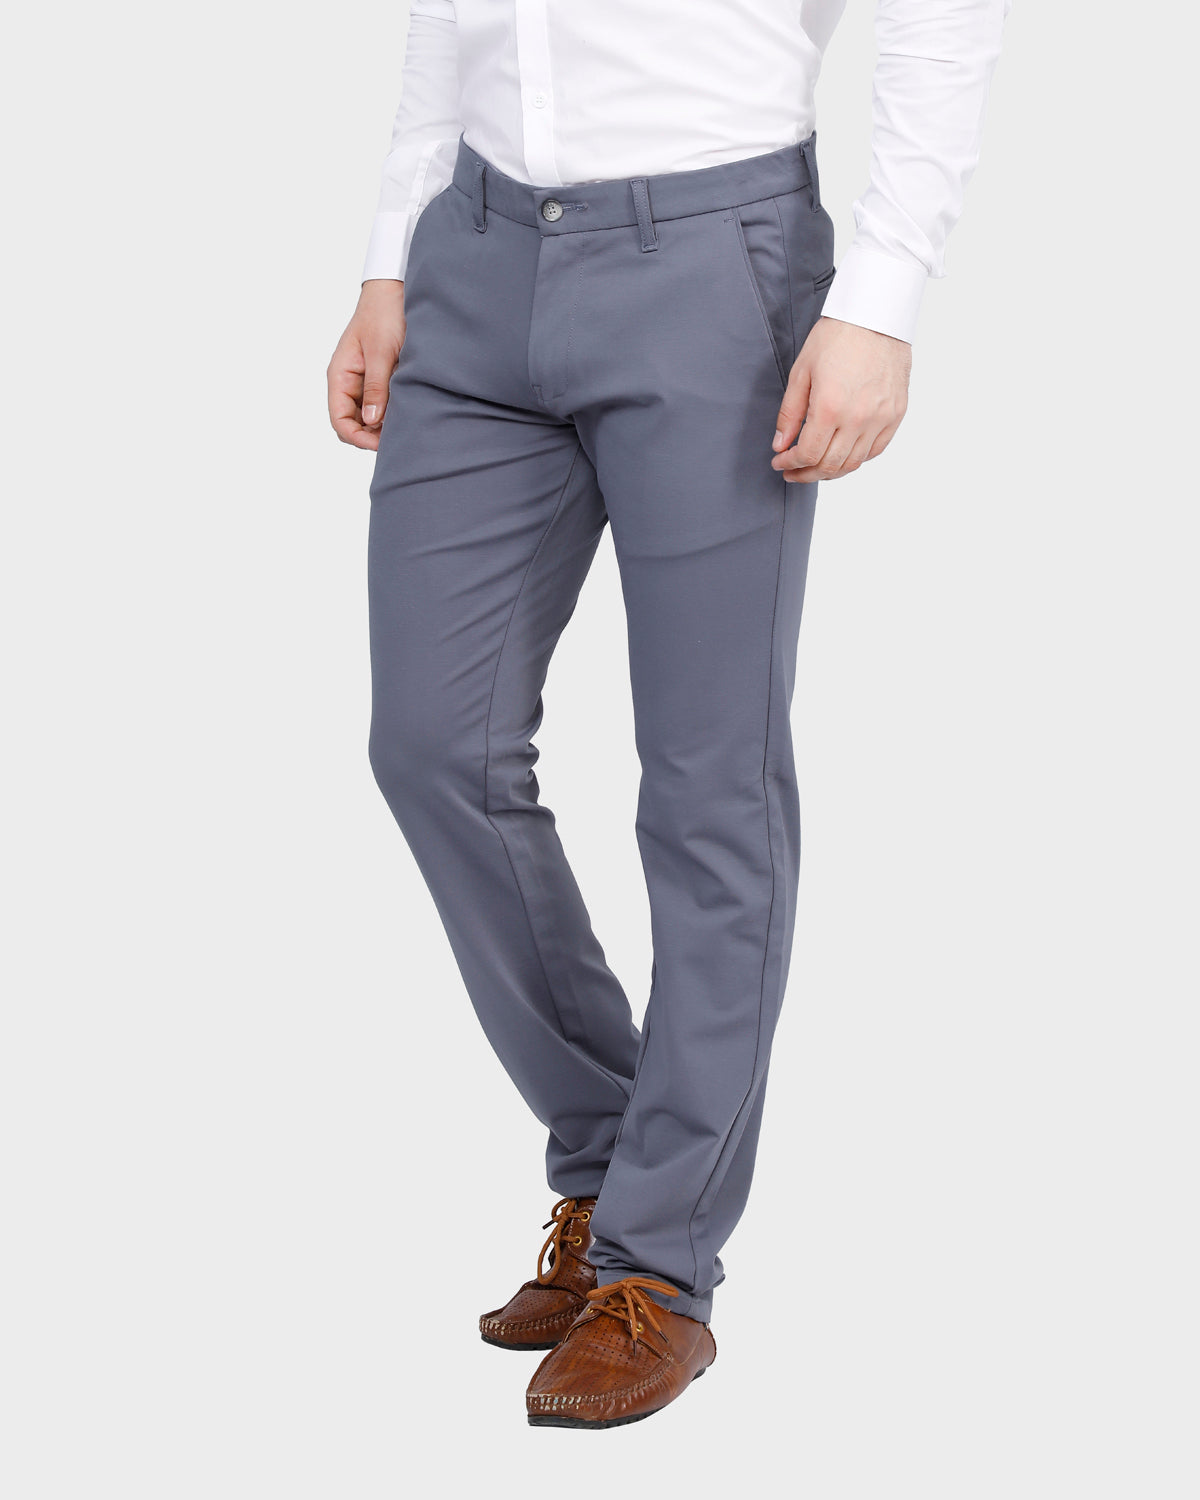 Men's Dark Grey Slim Fit Pant